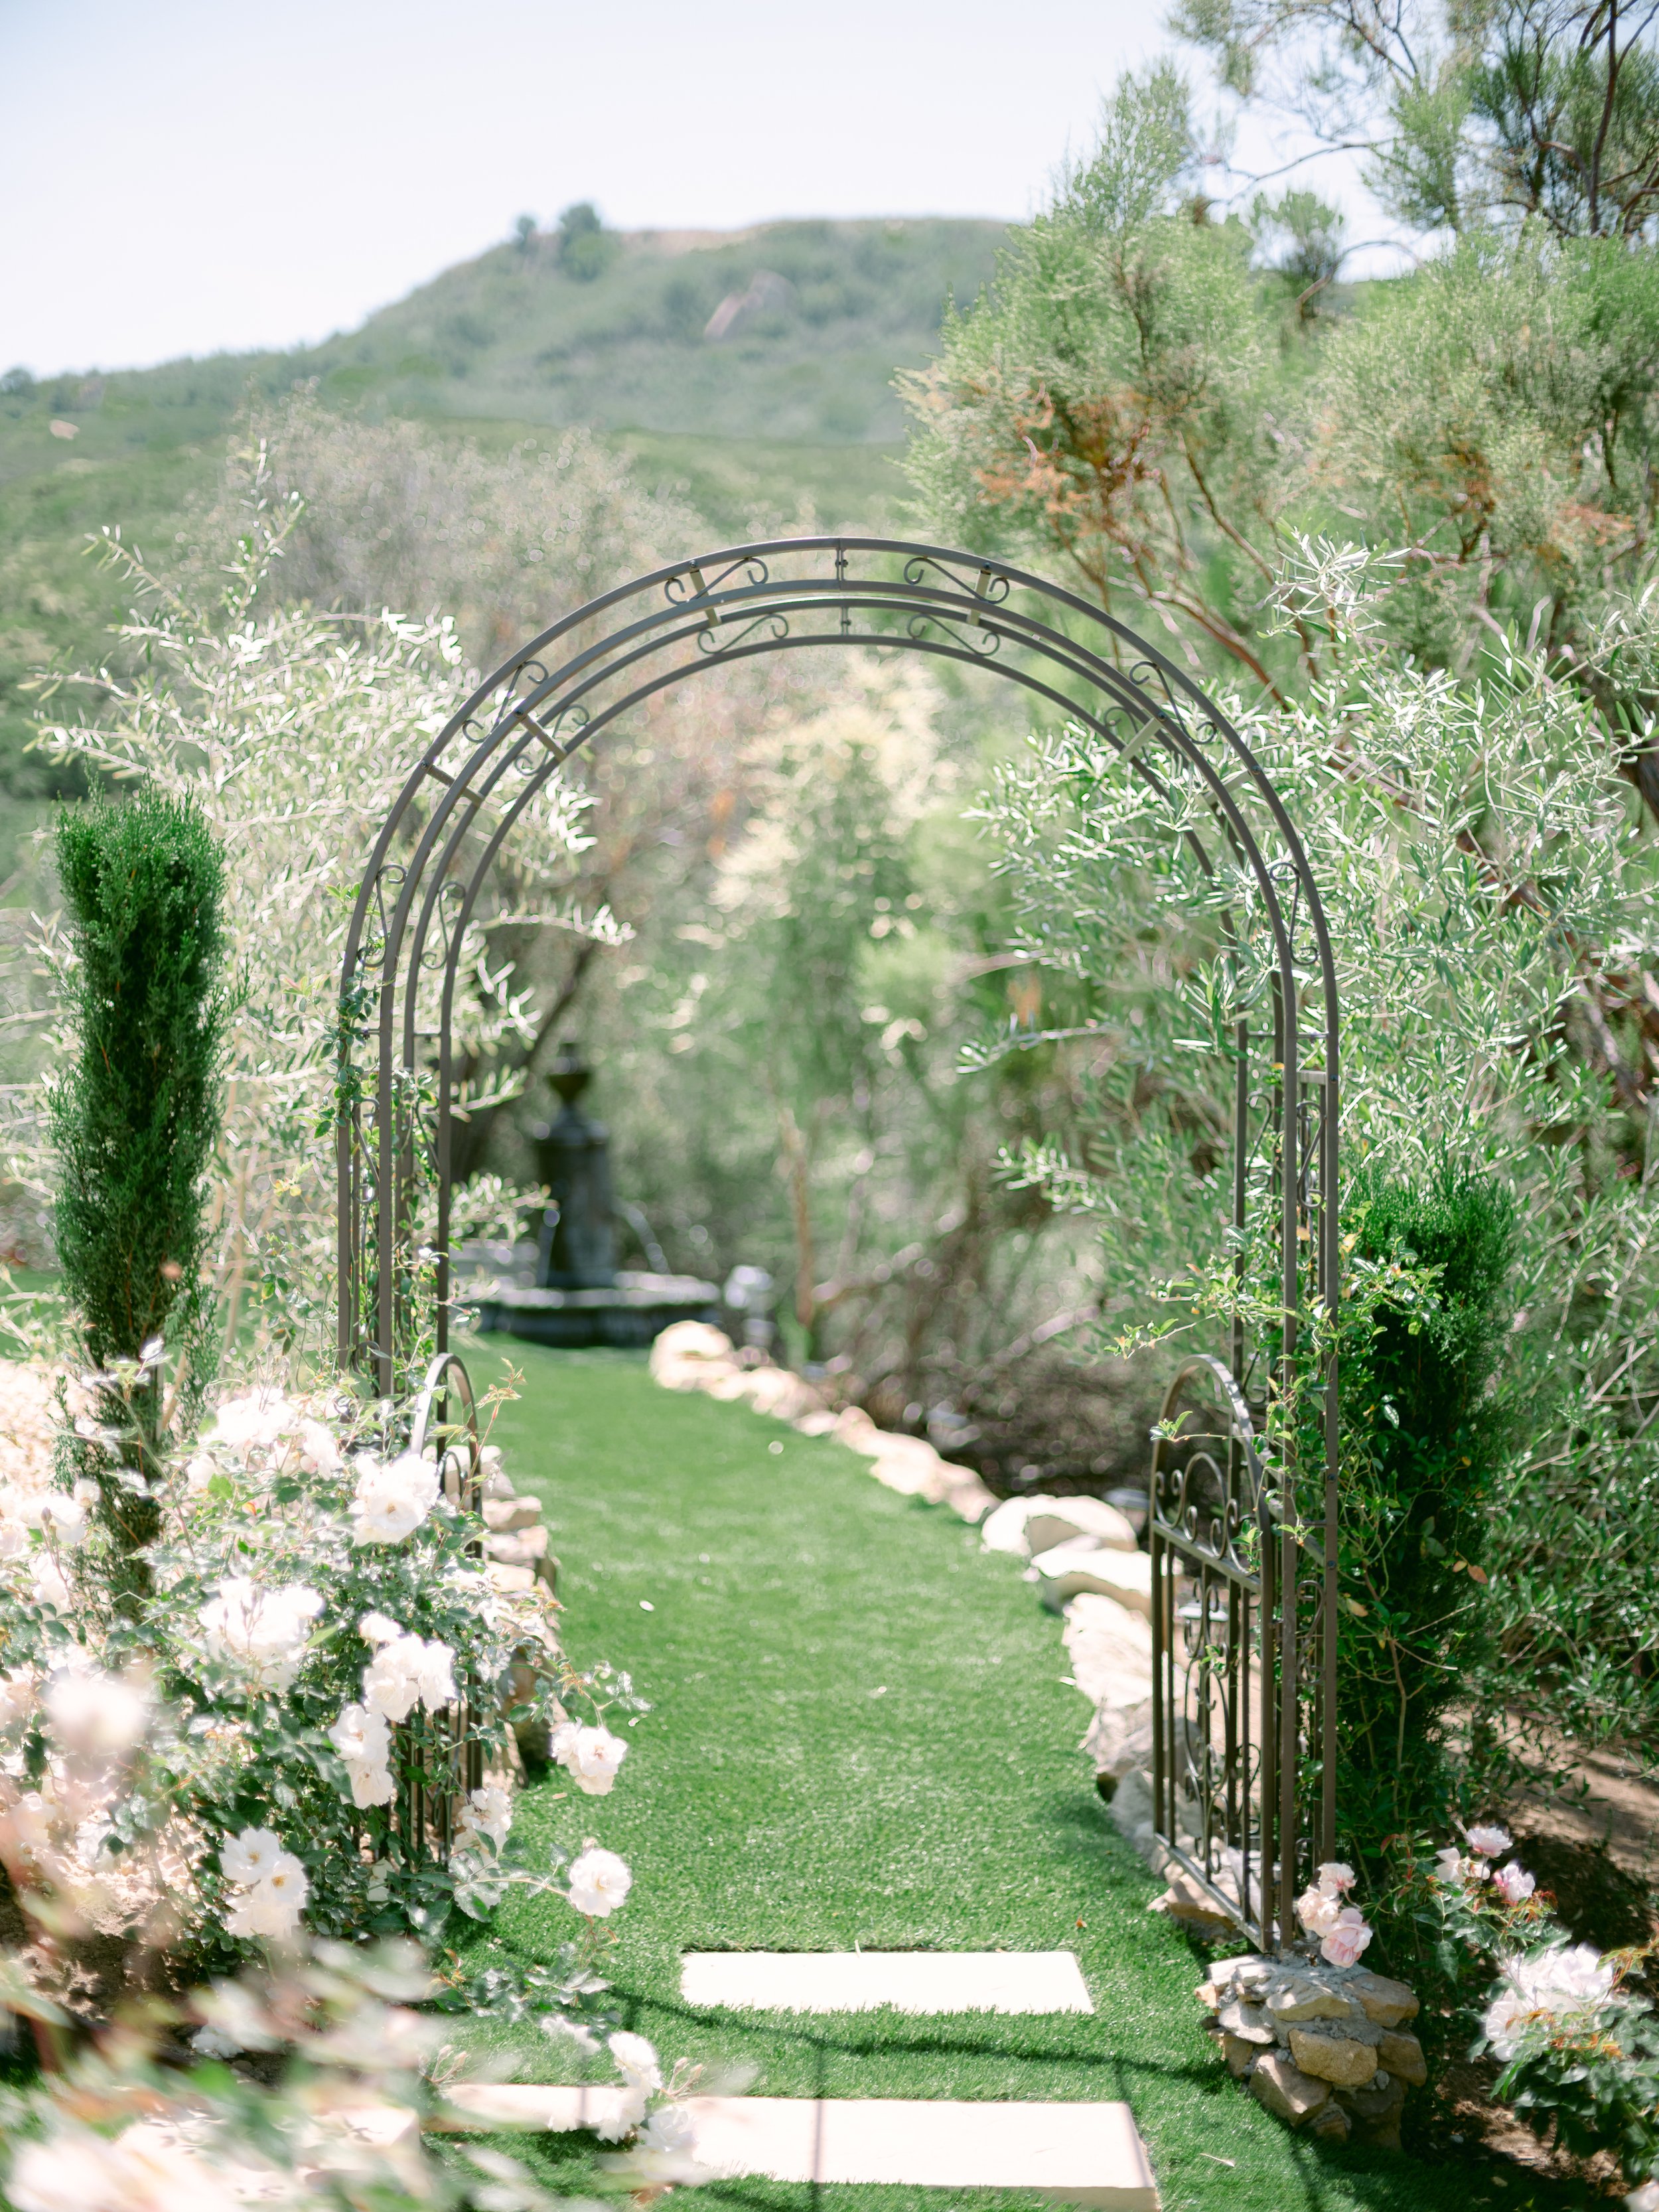 Entrance to Secret Garden